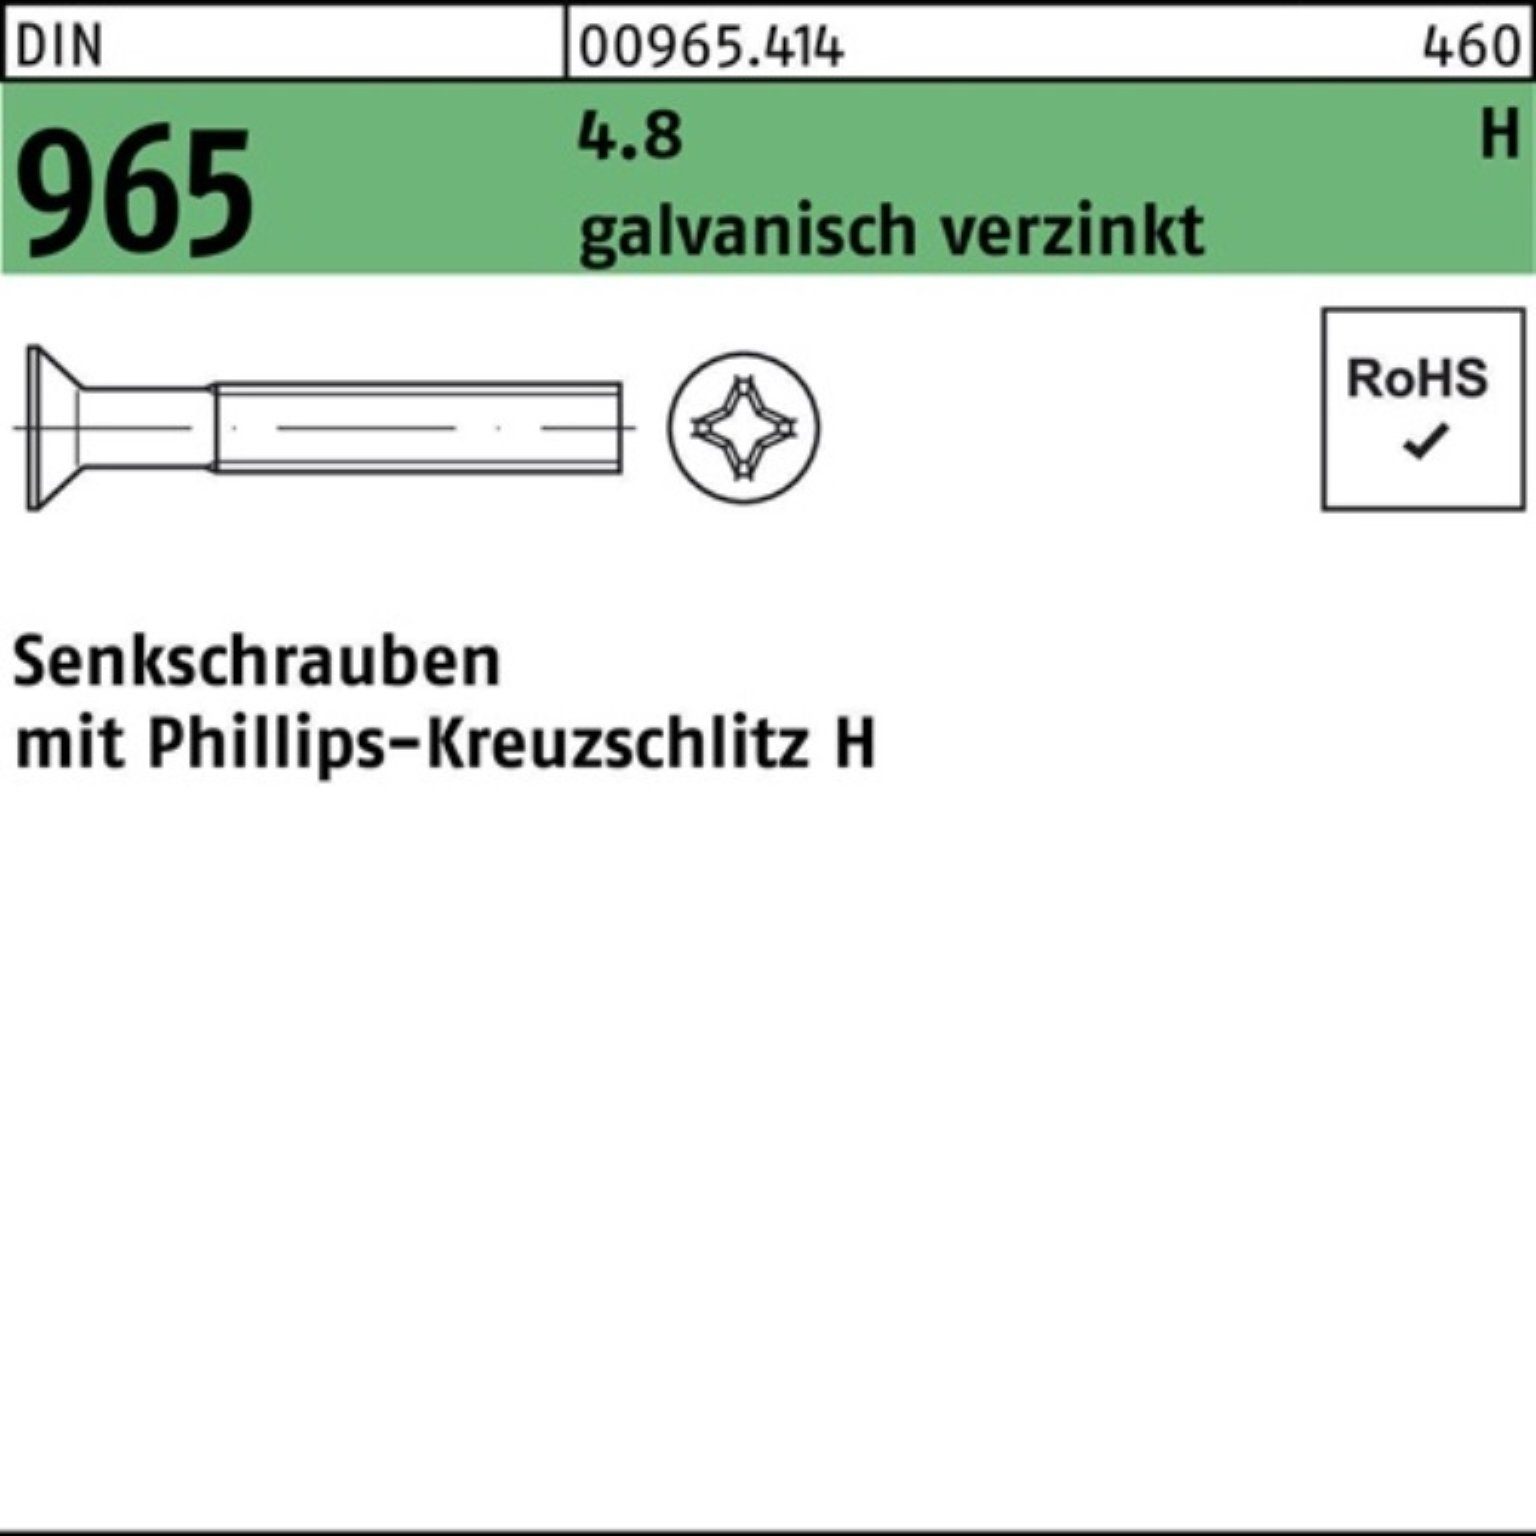 PH M4x Reyher Senkschraube galv.verz. 1000St. DIN 1000er Pack 4.8 965 DI Senkschraube 40-H